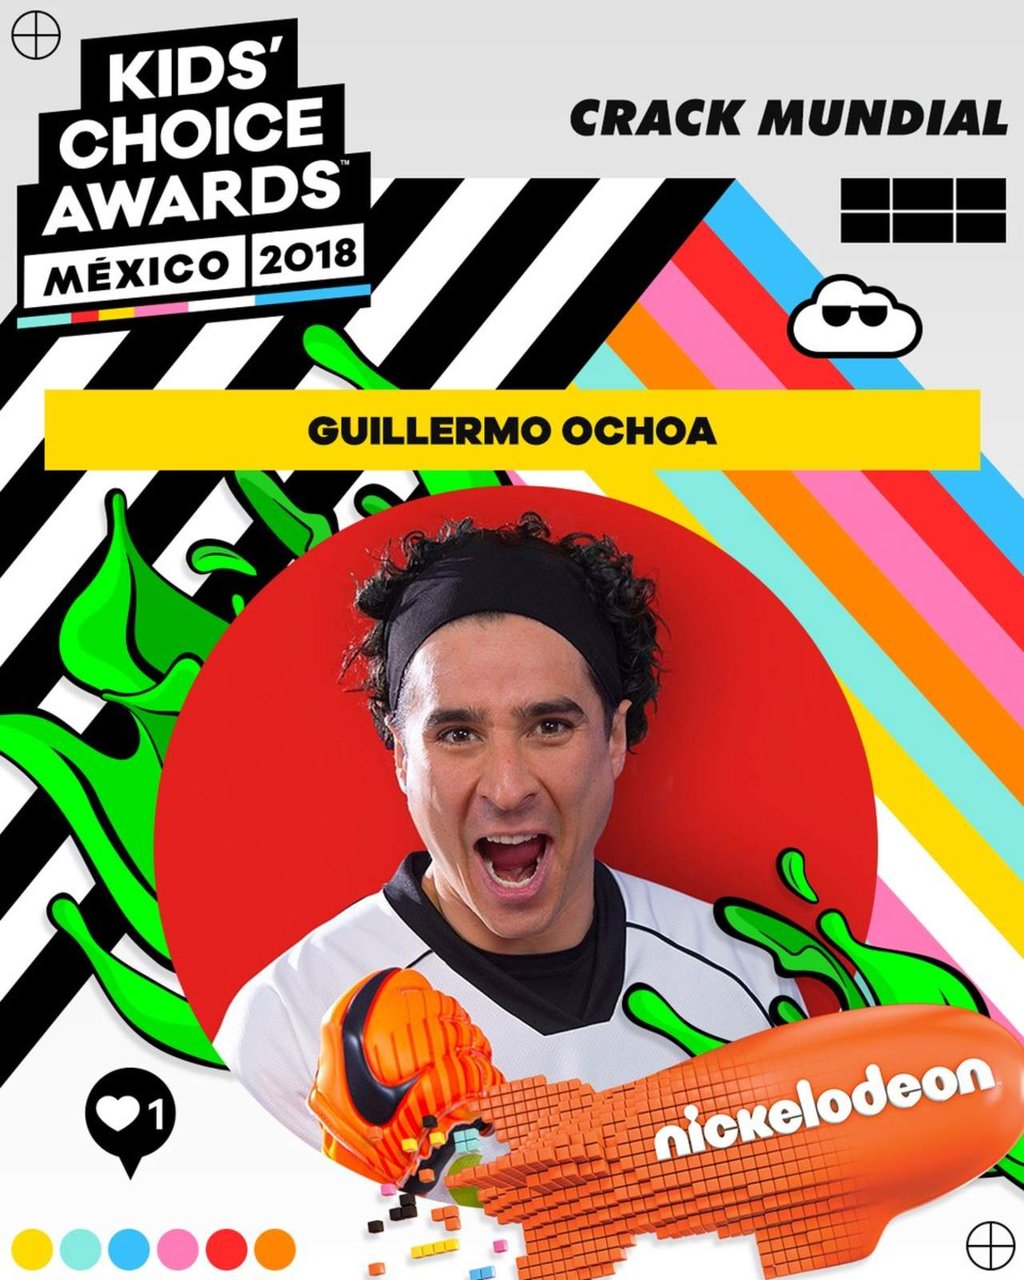 Nombran a Ochoa 'el crack del año' en los Kids Choice Awards